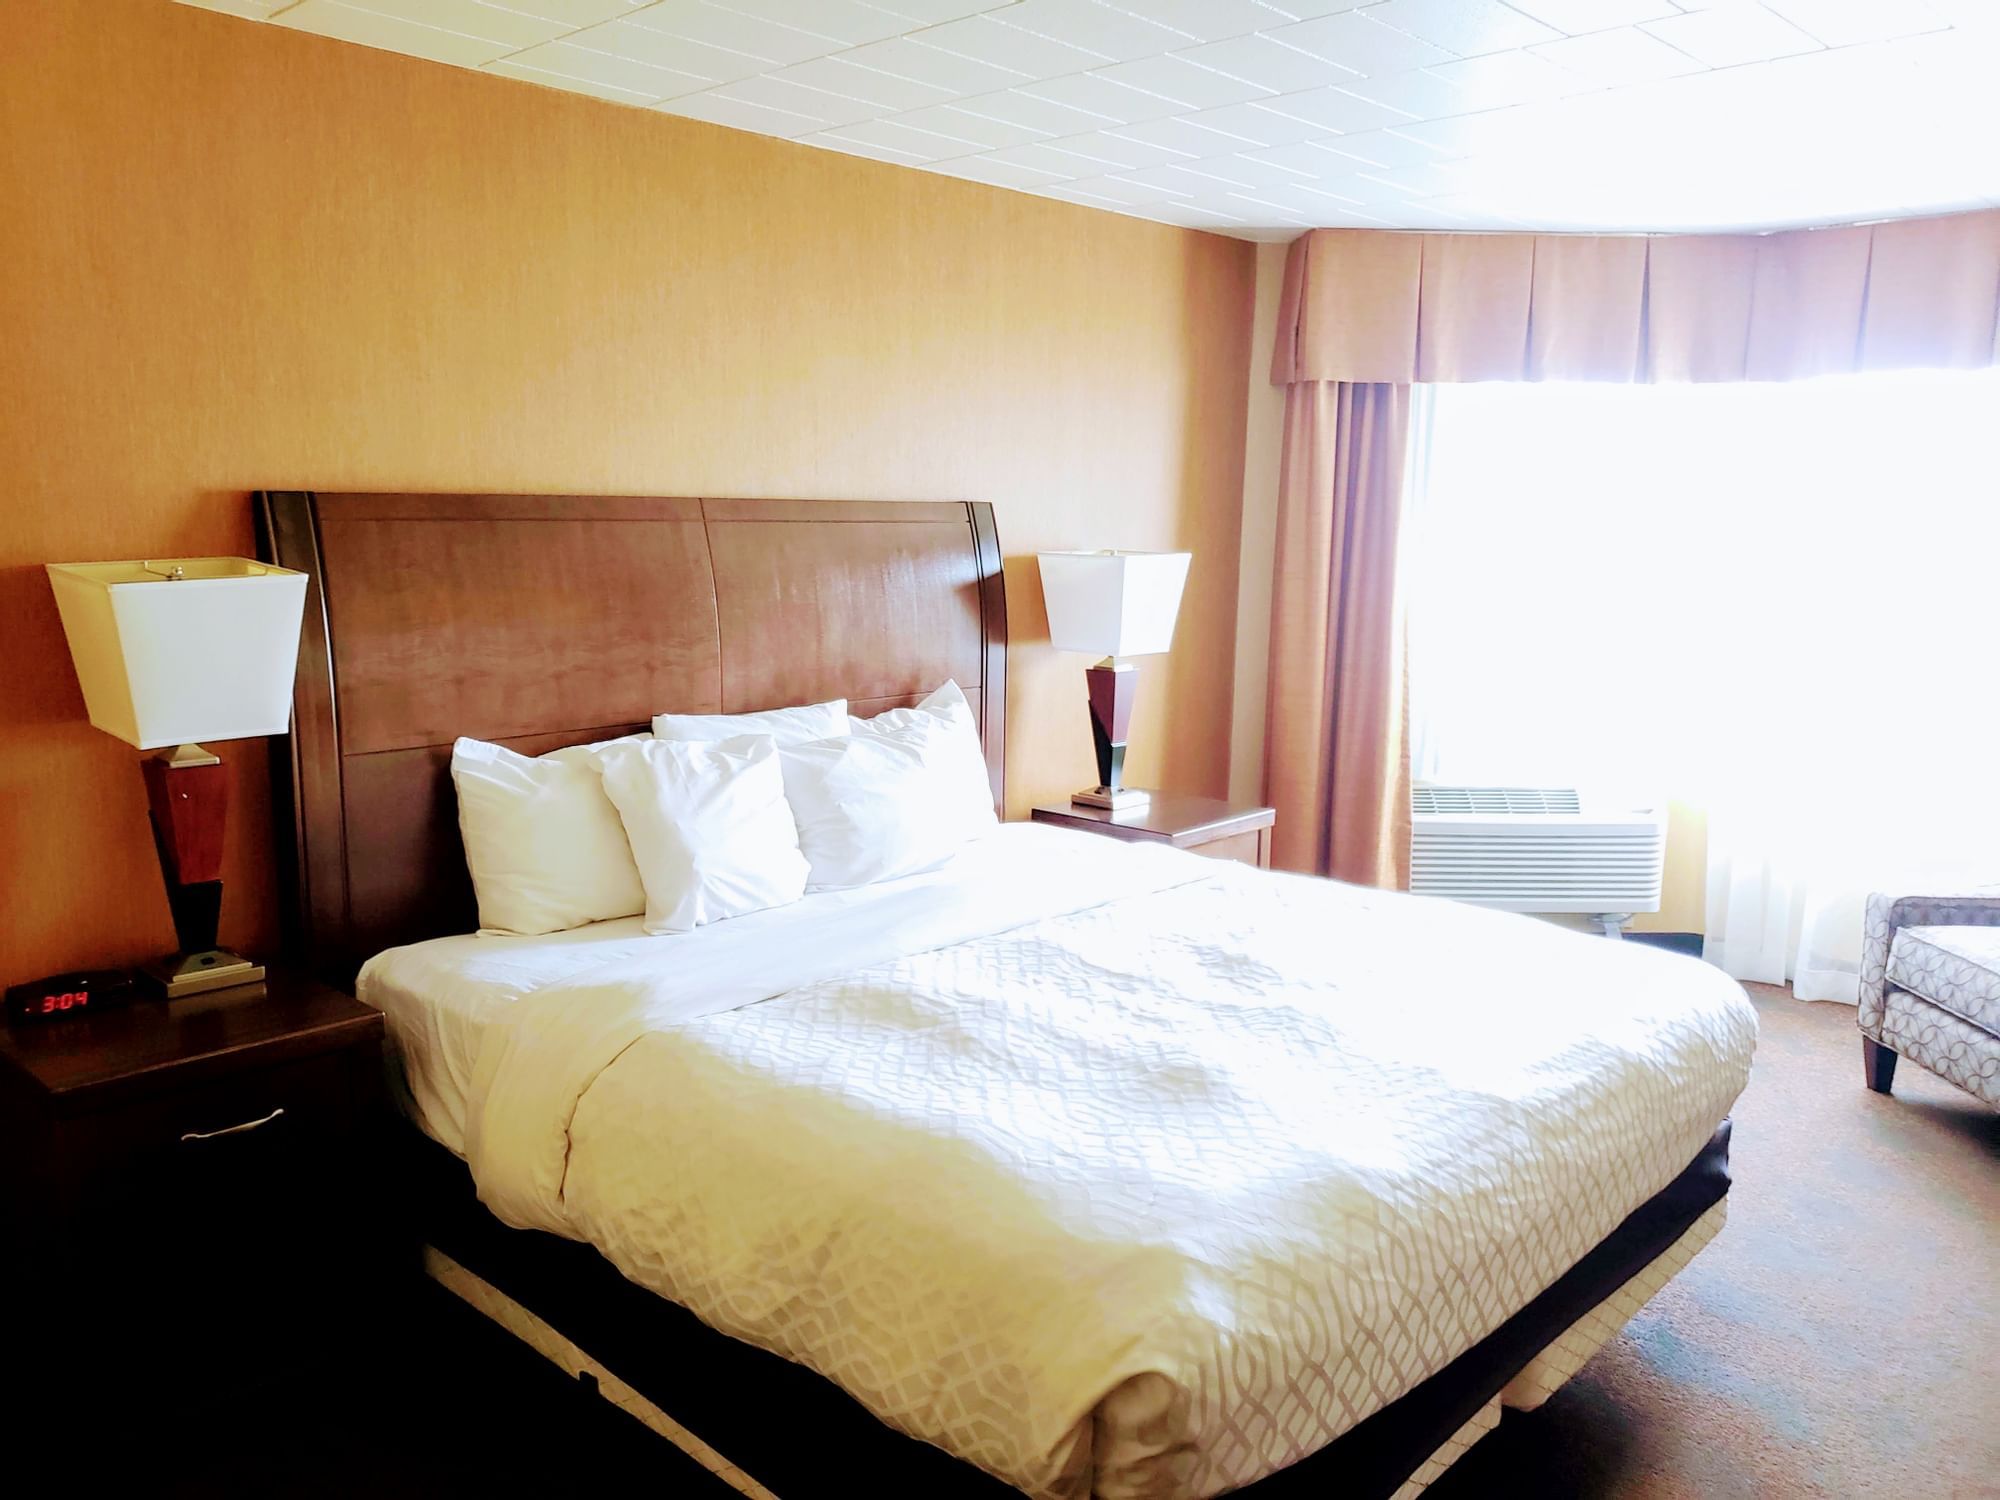 Bedroom Arrangement in King Room at Evergreen Resort